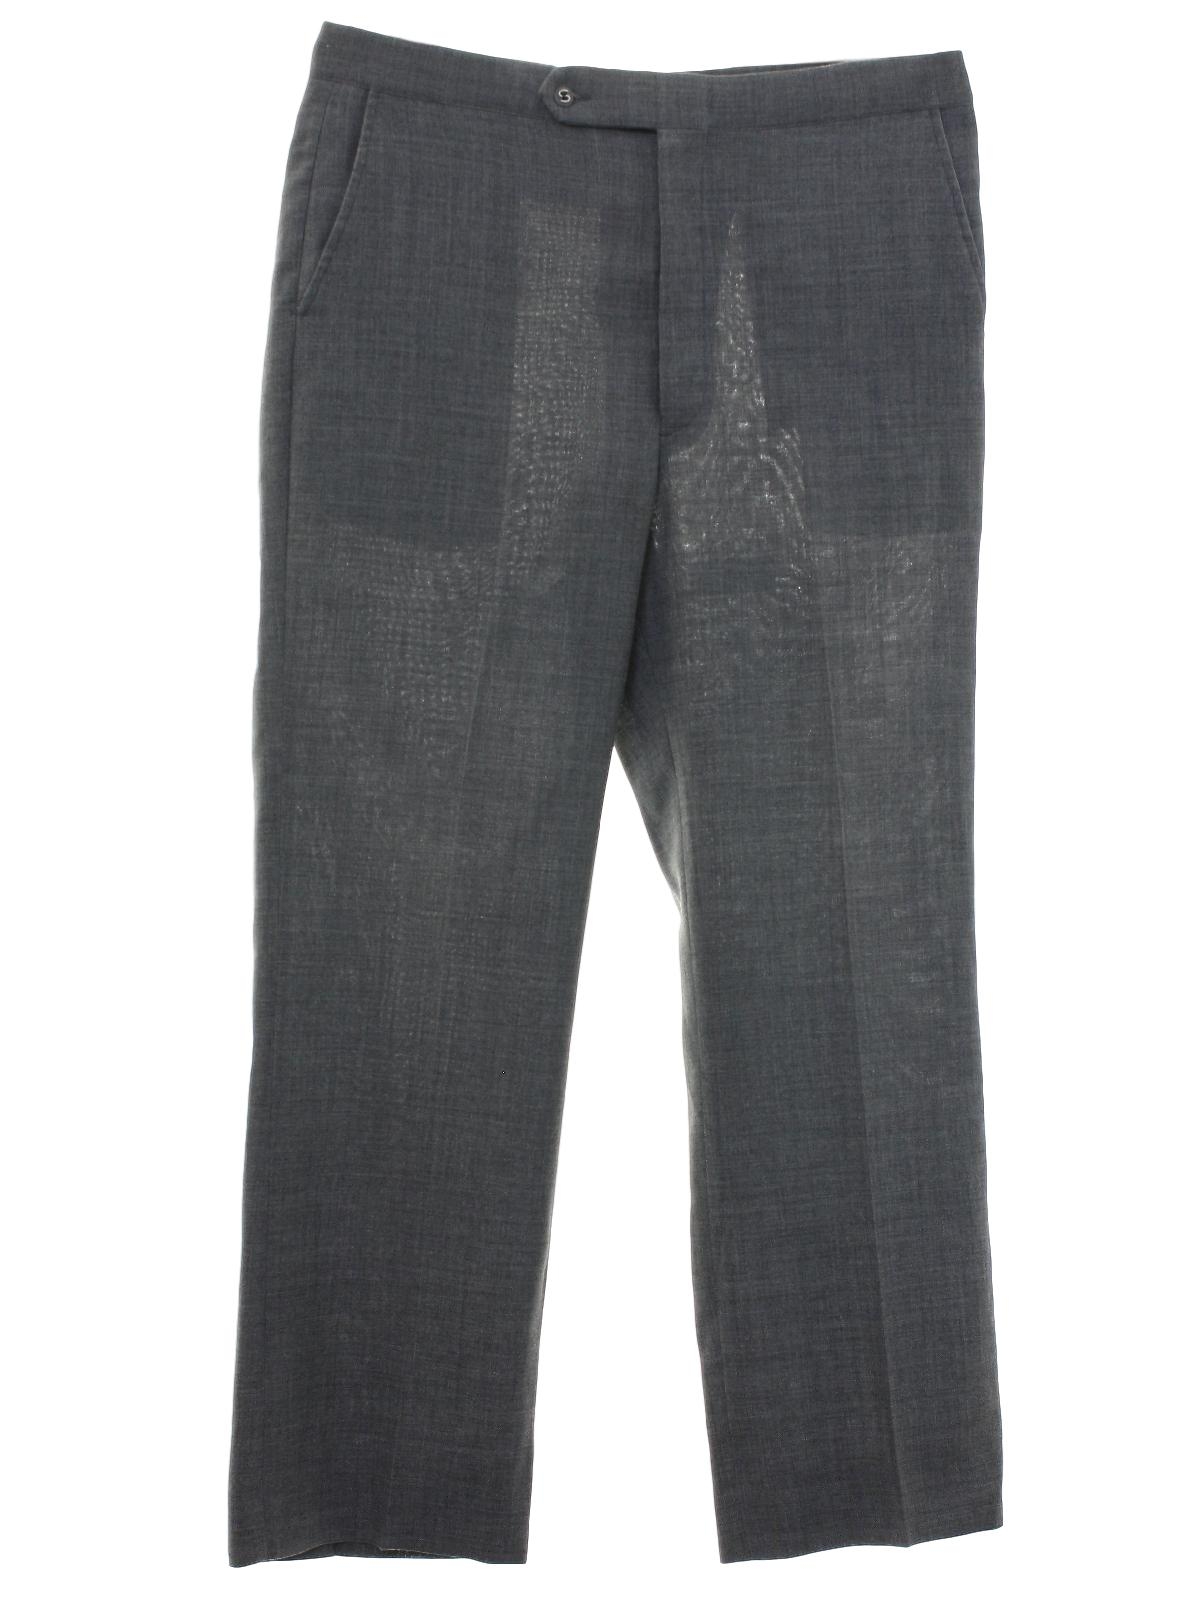 1970's Pants (Sansabelt): Late 70s -Sansabelt- Mens gray solid colored ...